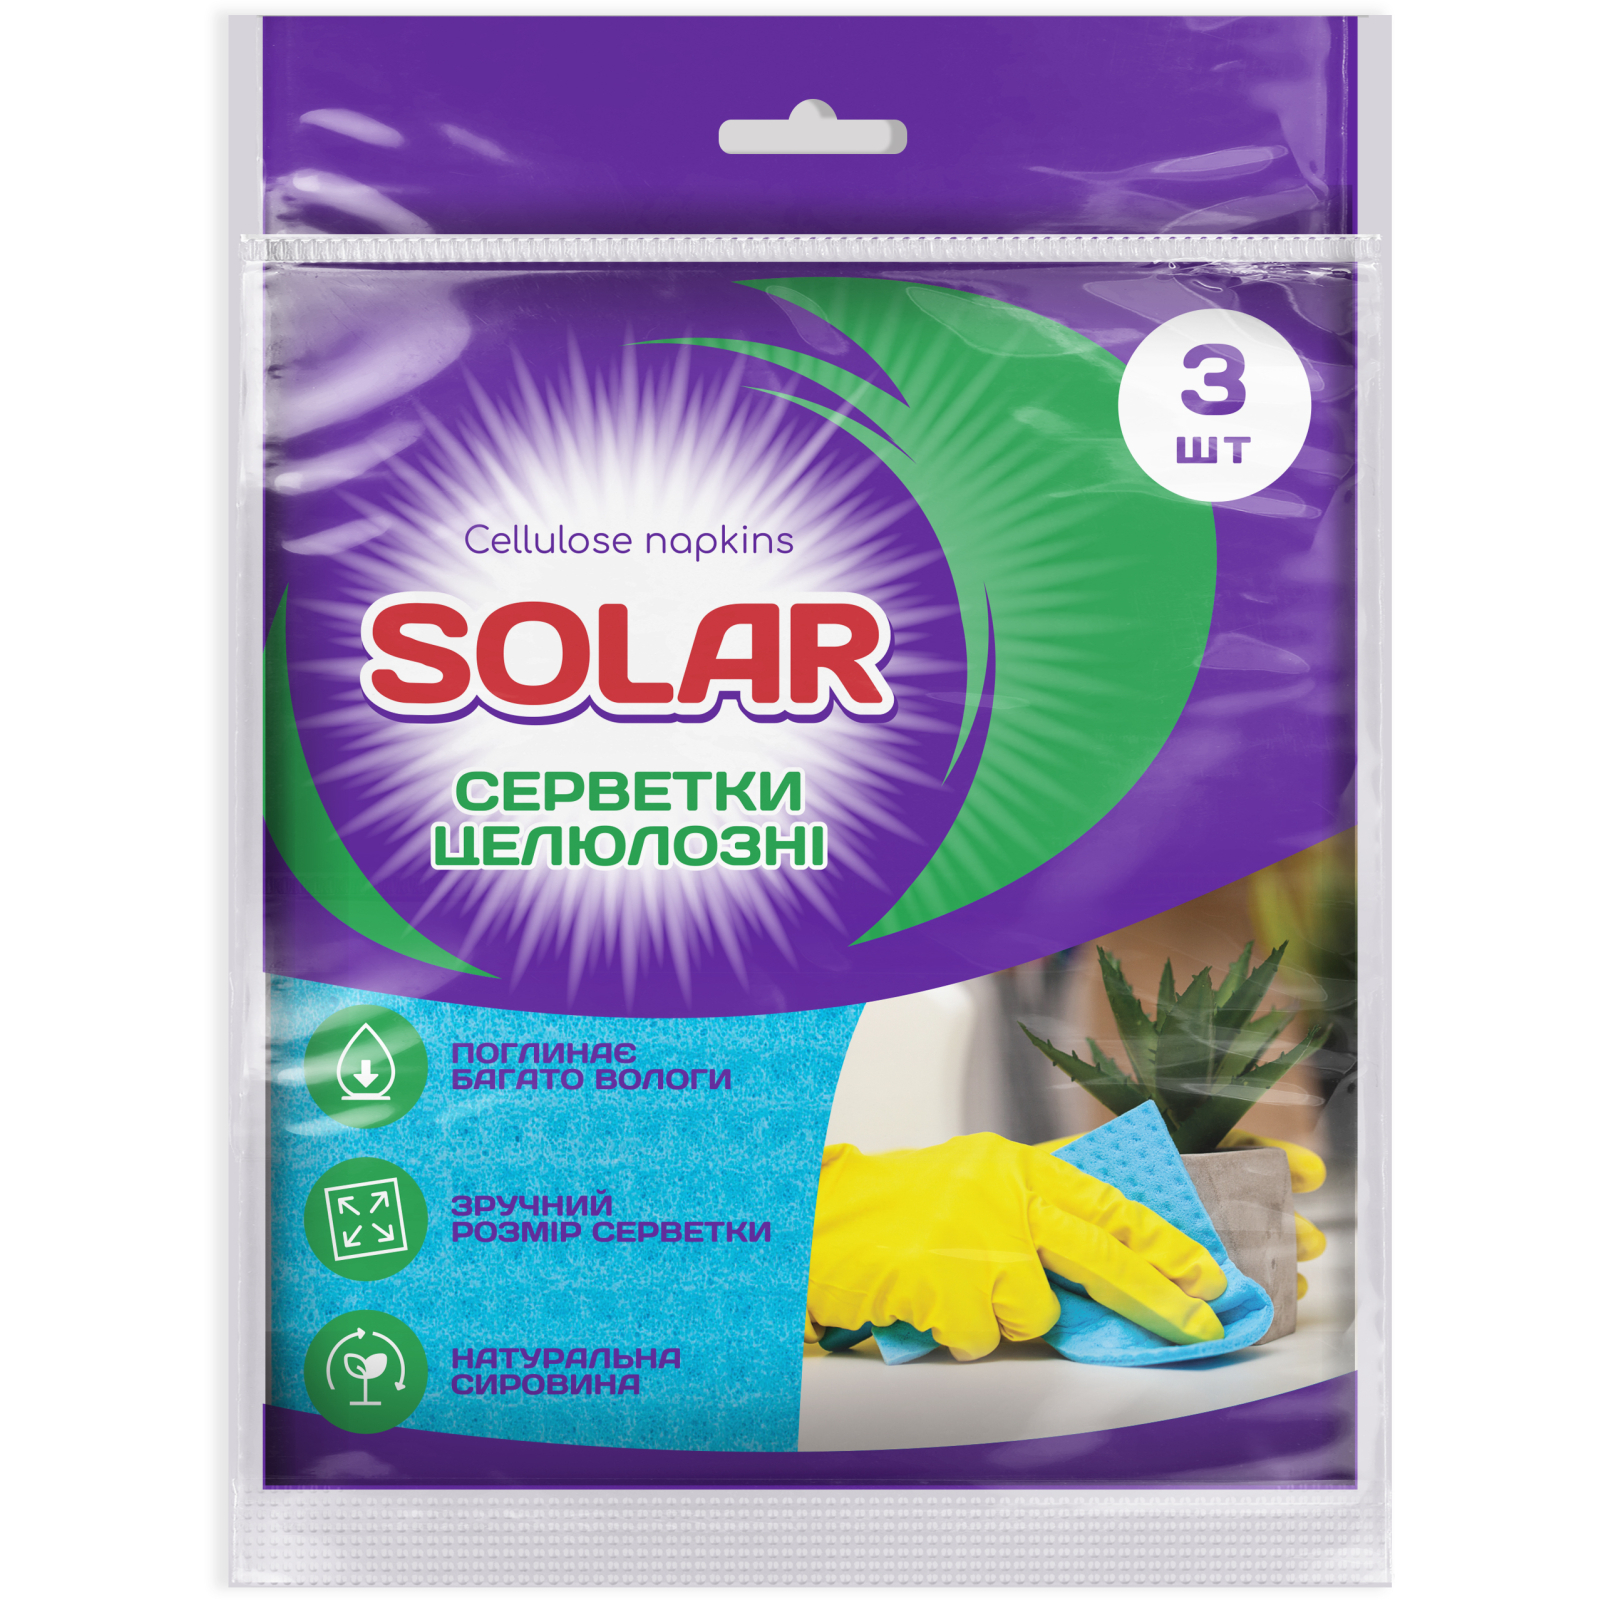 Серветки для прибирання Solar Household Целюлозні вологопоглинаючі 3 шт. (4820269930179)